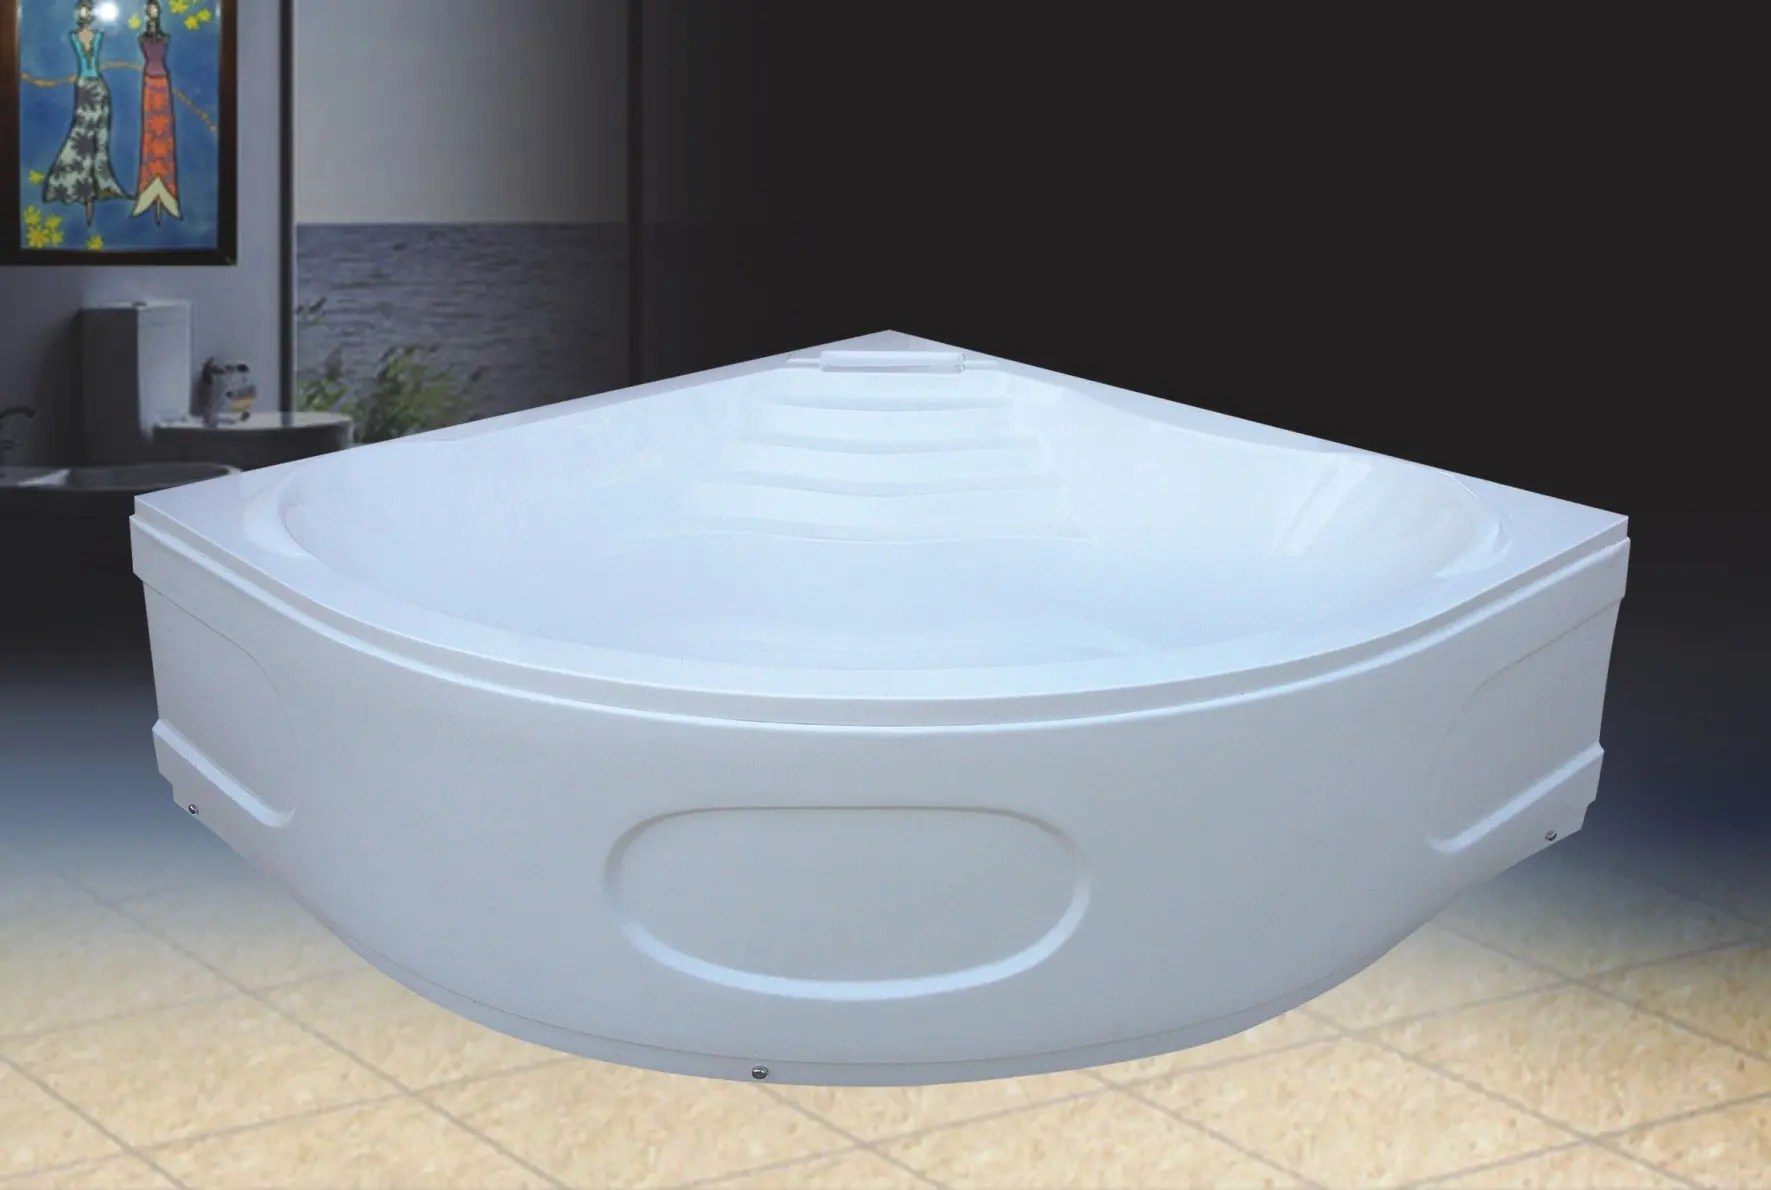 Large Portable Bathtub For Adults - gwyoal